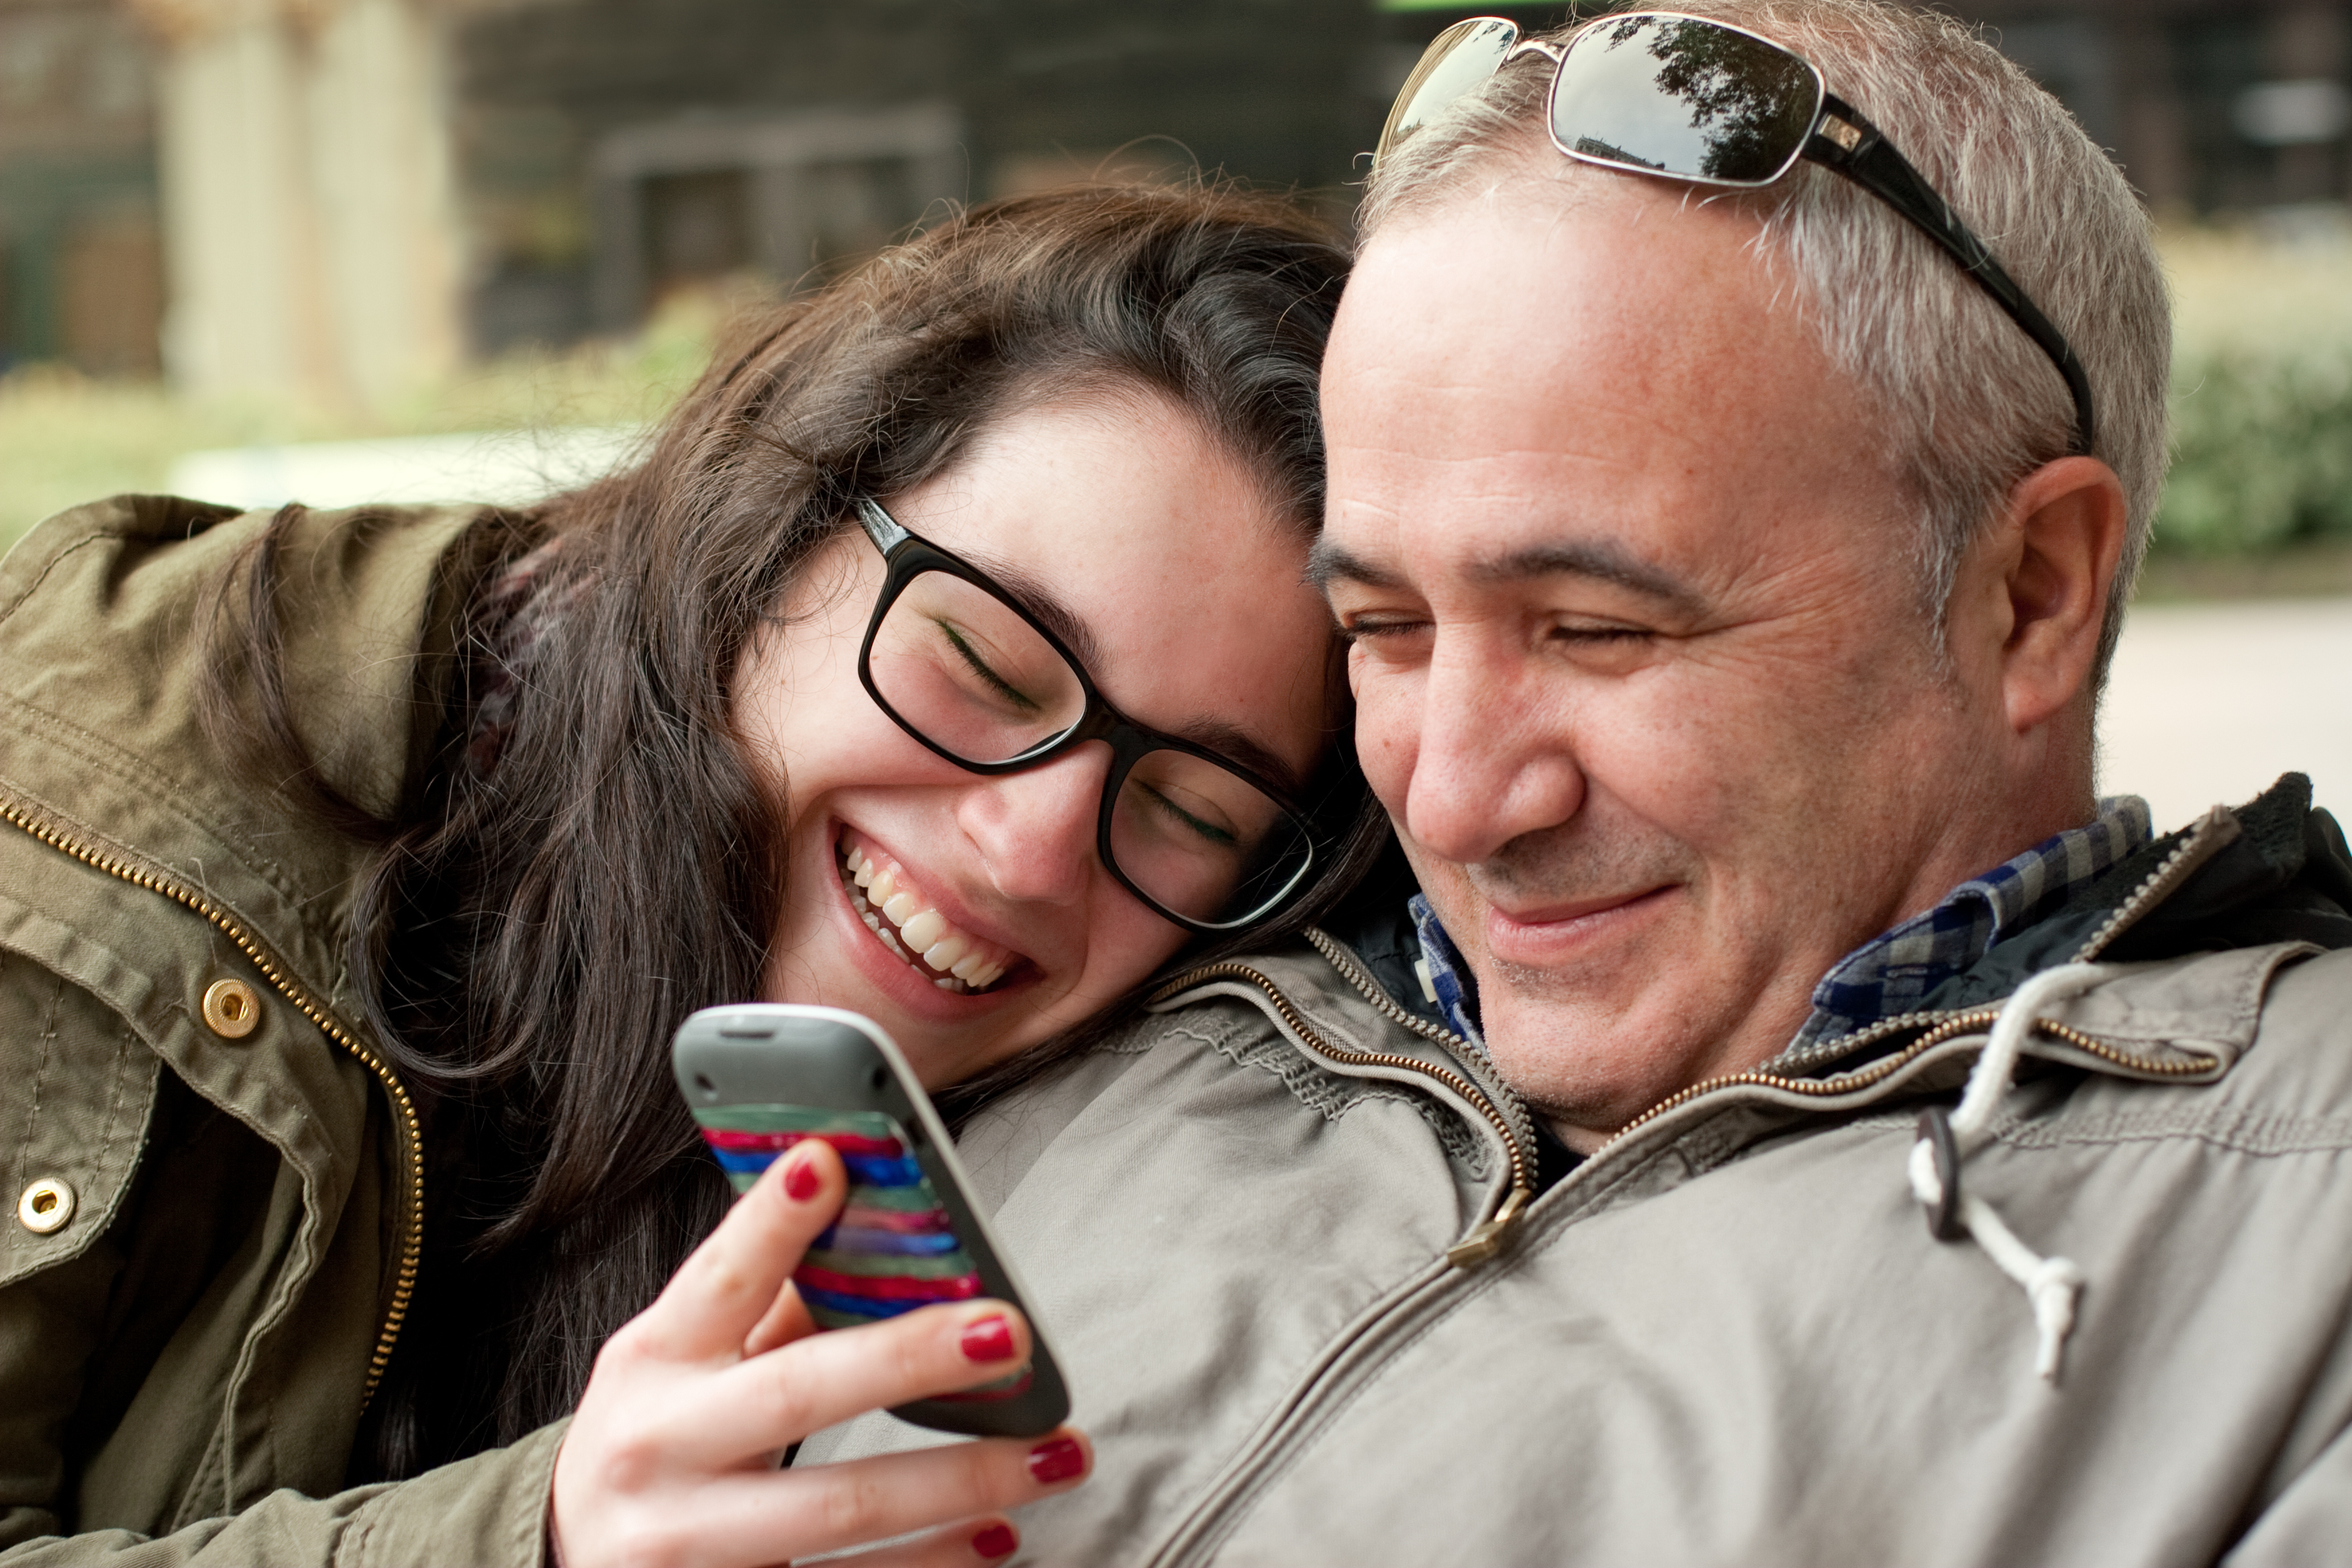 Una mujer ríe mientras enseña su teléfono móvil a un hombre. | Foto: Shutterstock